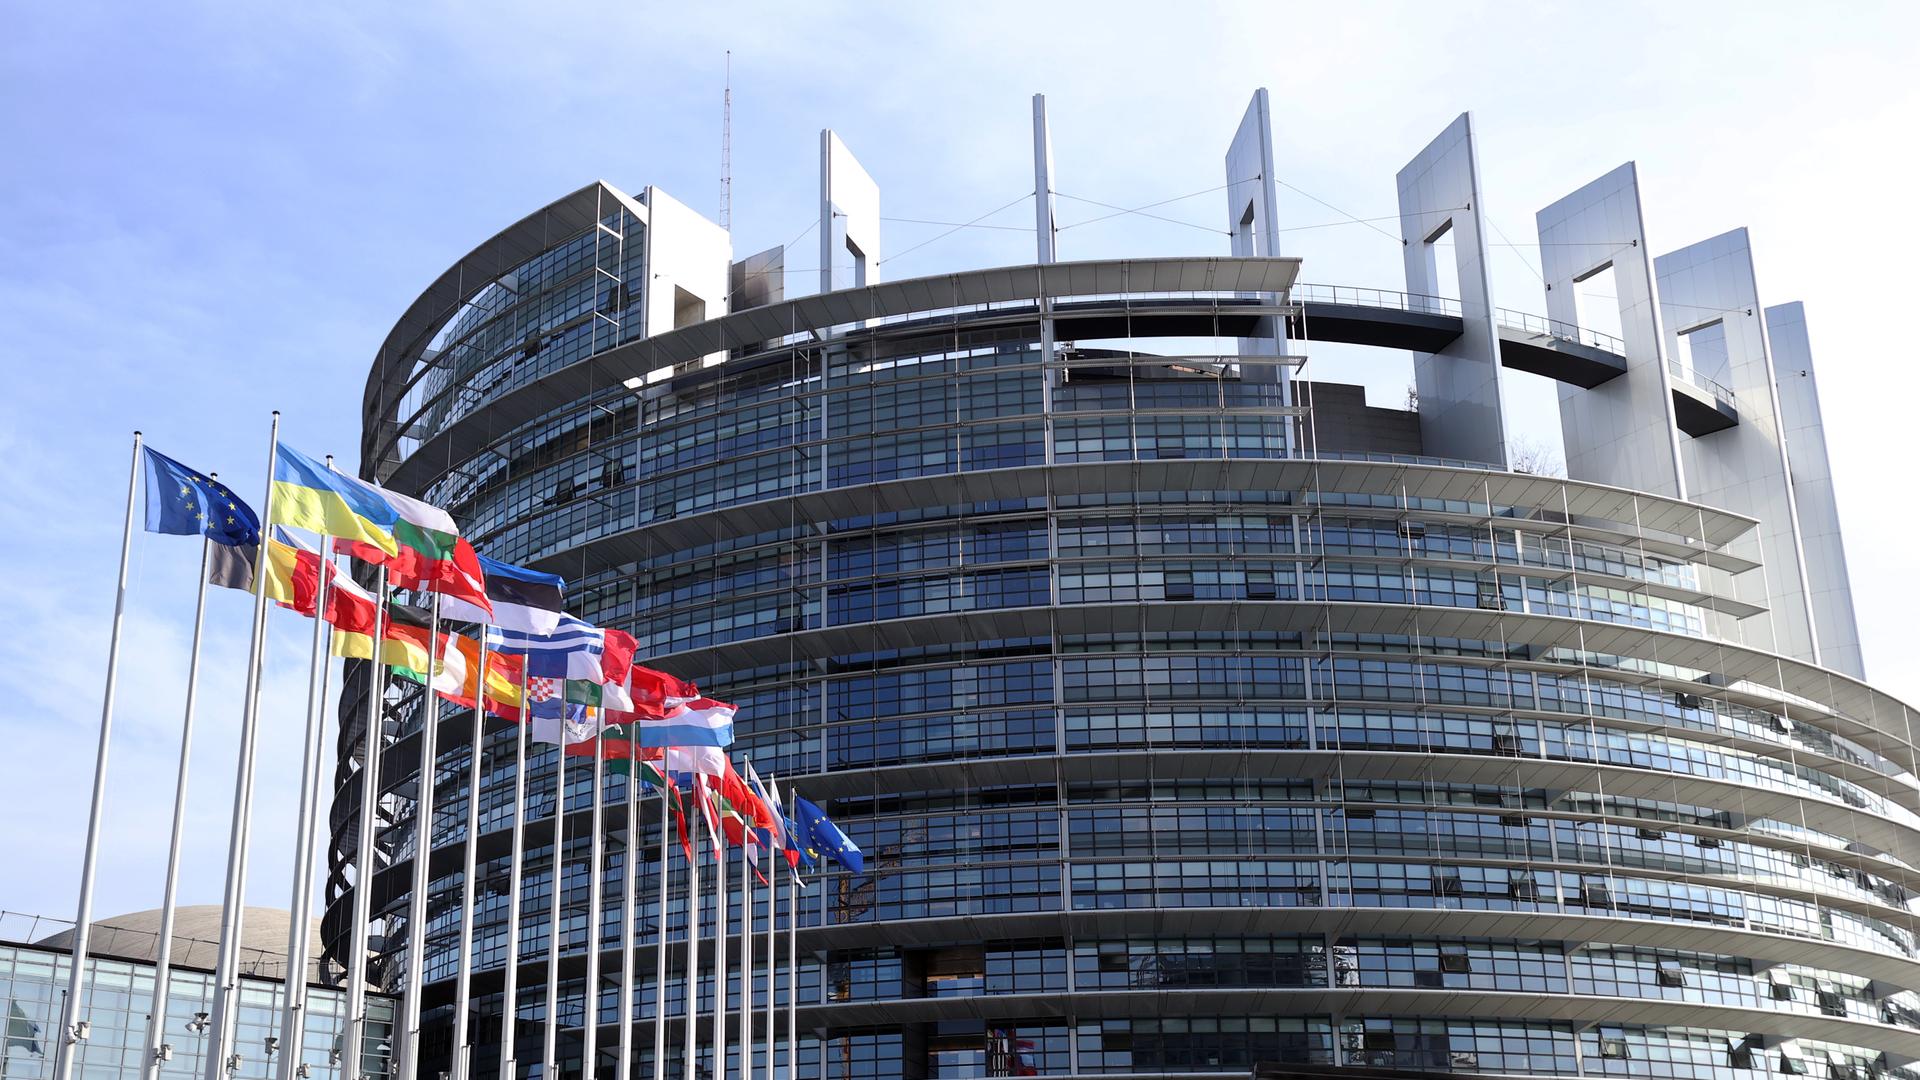 Das EU-Parlament in Brüssel ist mit einem in seinem Umfang noch nicht absehbaren Skandal konfrontiert, kommentiert Klaus Remme. Im Bild: Flaggen wehen vor dem EU-Parlament in Straßburg, Oktober 2022